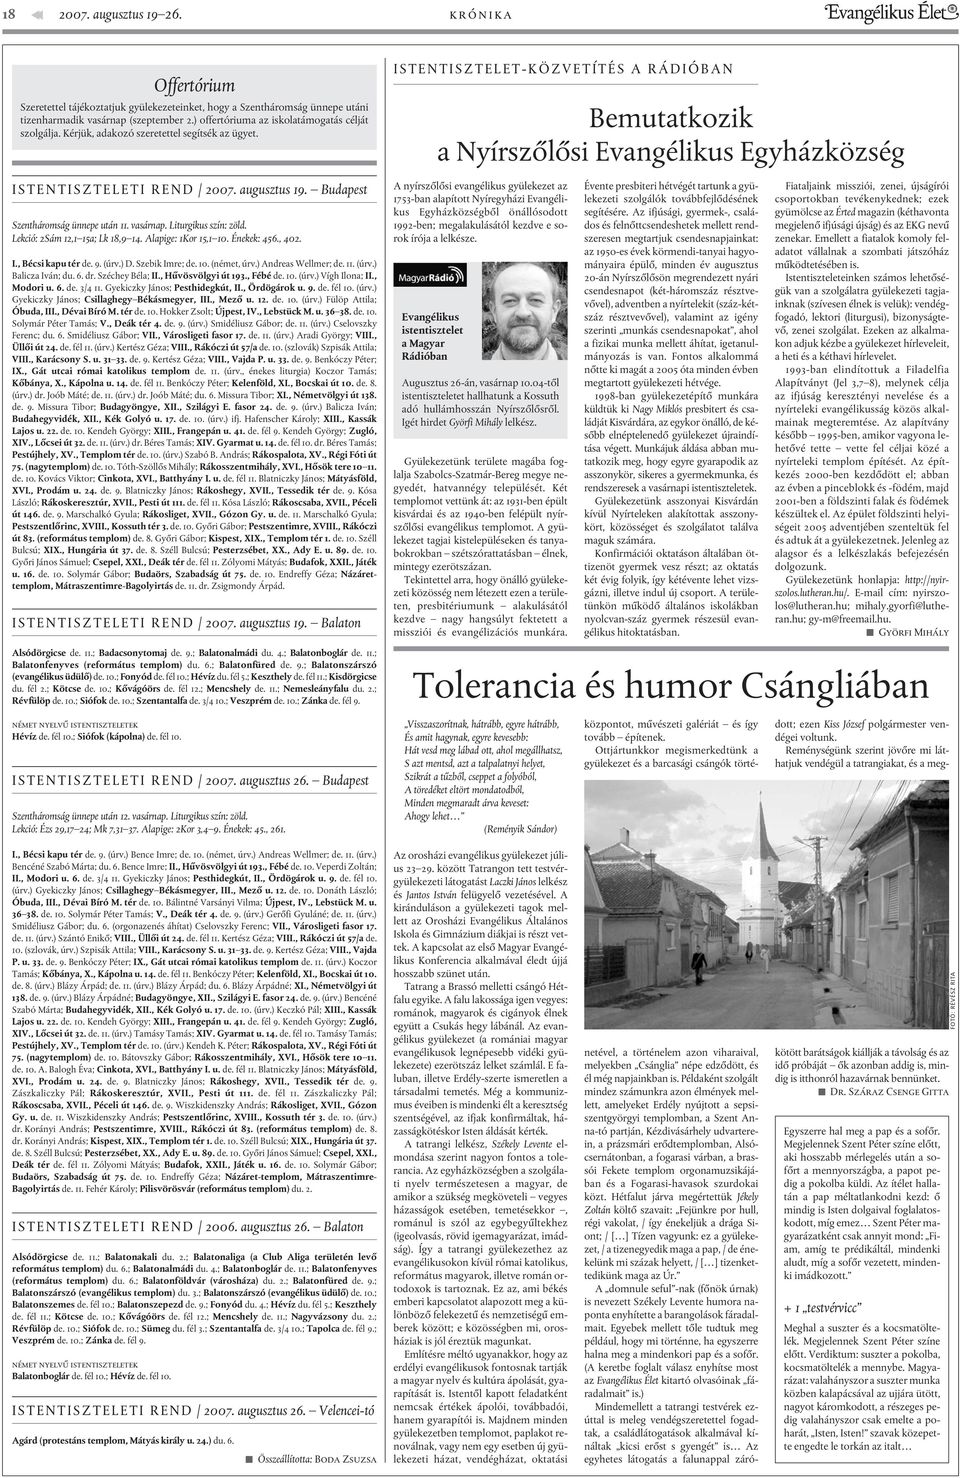 ISTENTISZTELET-KÖZVETÍTÉS A RÁDIÓBAN Bemutatkozik a Nyírszõlõsi Evangélikus Egyházközség ISTENTISZTELETI REND / 2007. augusztus 19. Budapest Szentháromság ünnepe után 11. vasárnap.